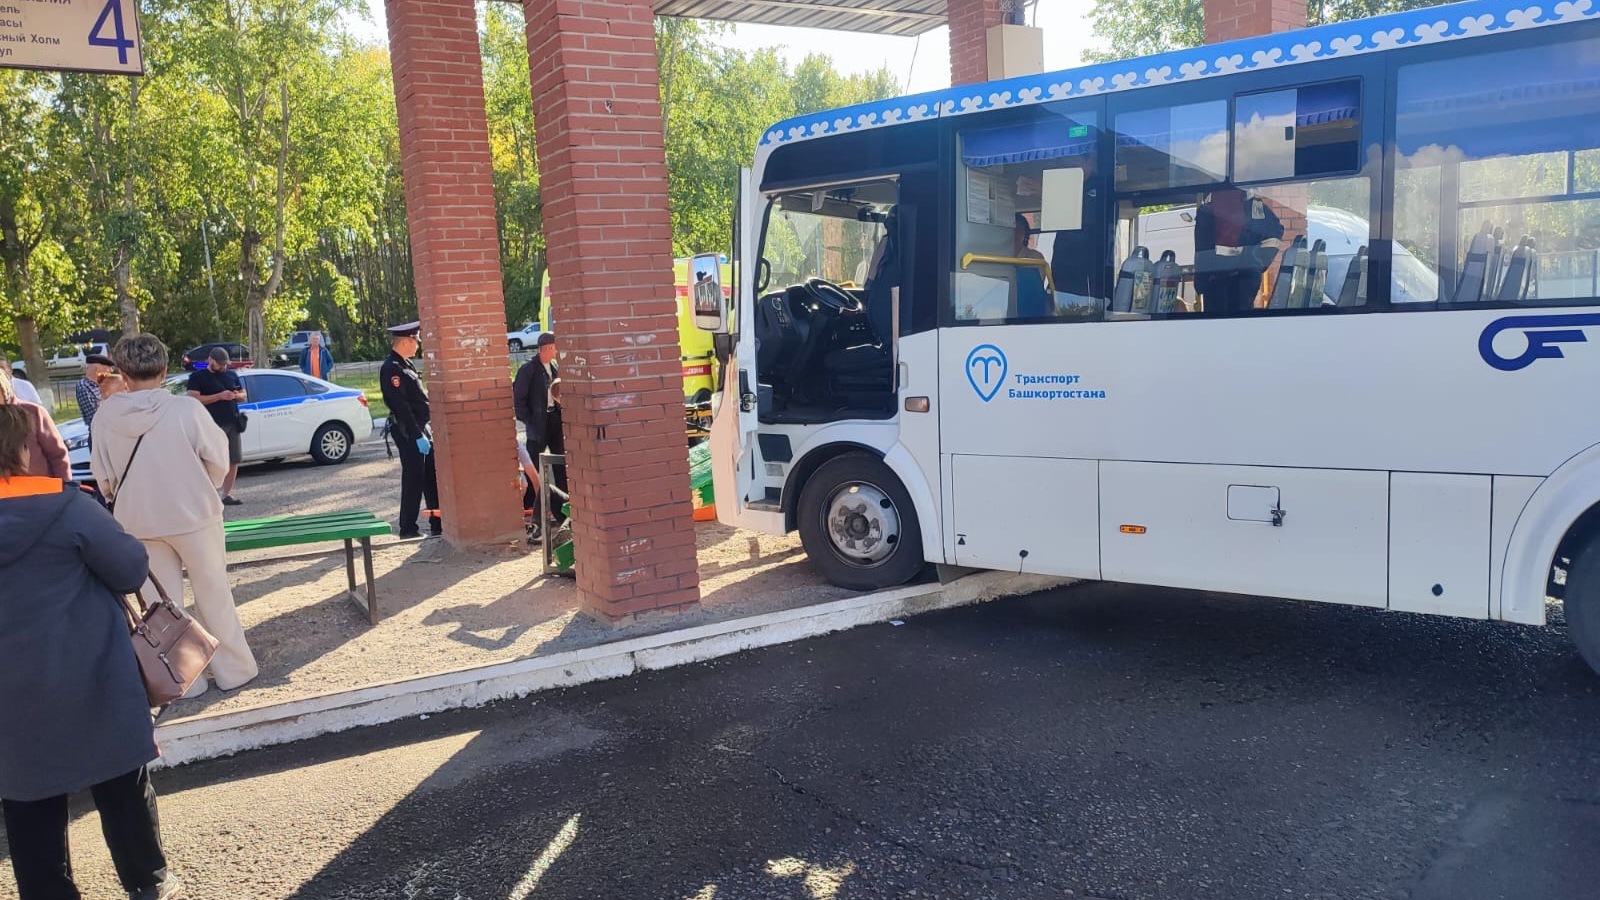 Перевозчик прокомментировал ситуацию с автобусом, врезавшимся в остановку в Башкирии